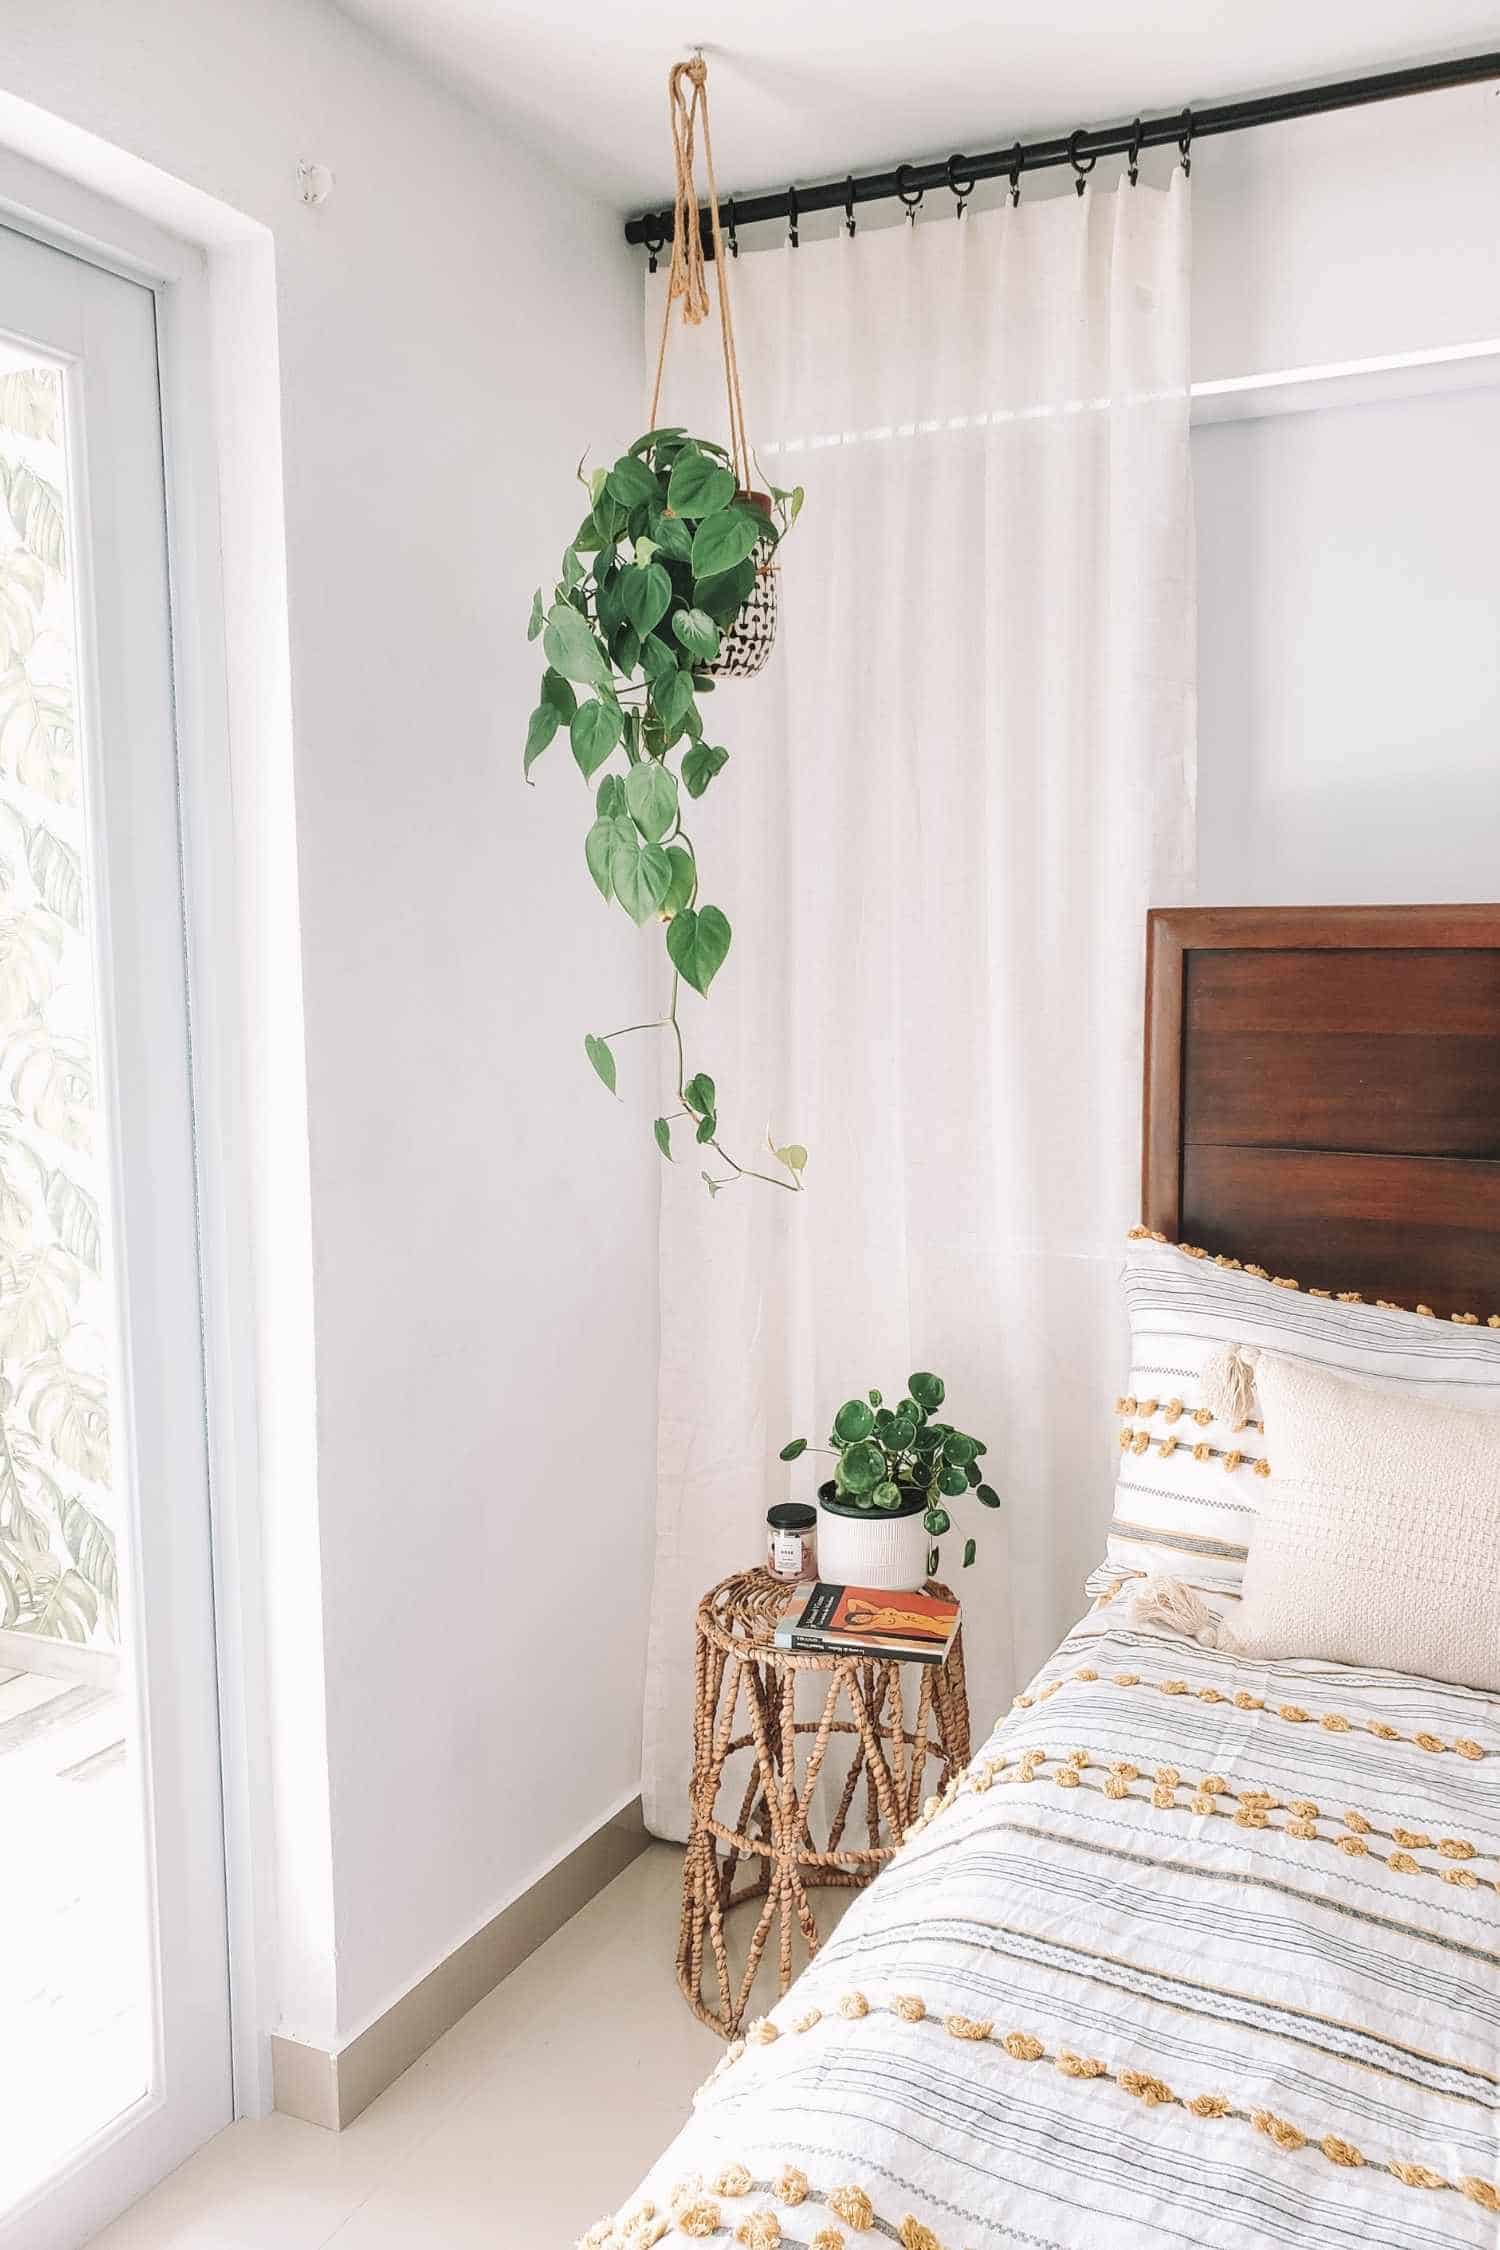 Plants in boho bedroom decor.